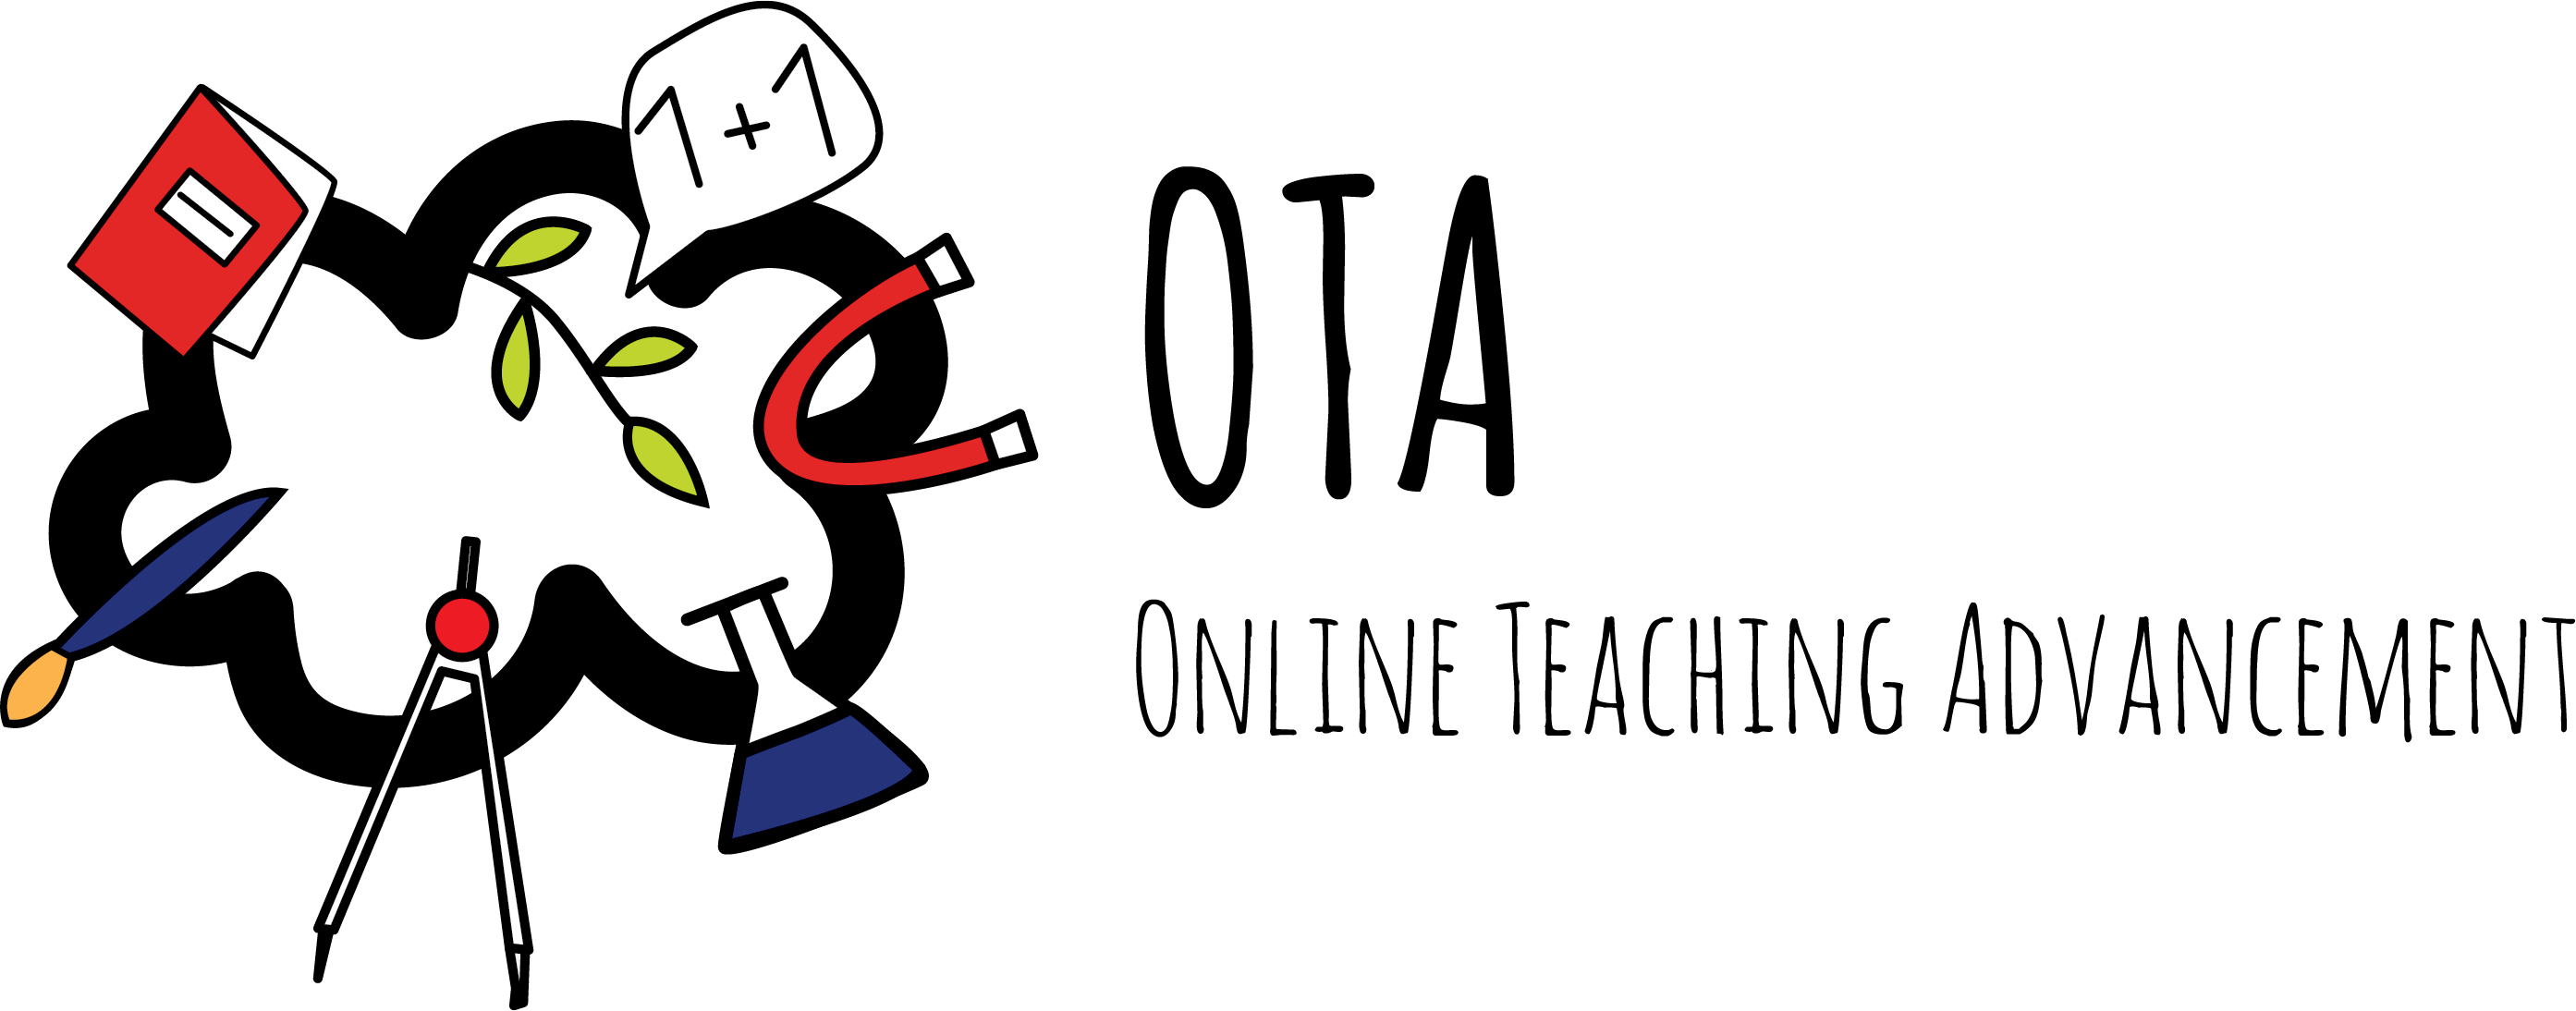 Online Teaching Advancement